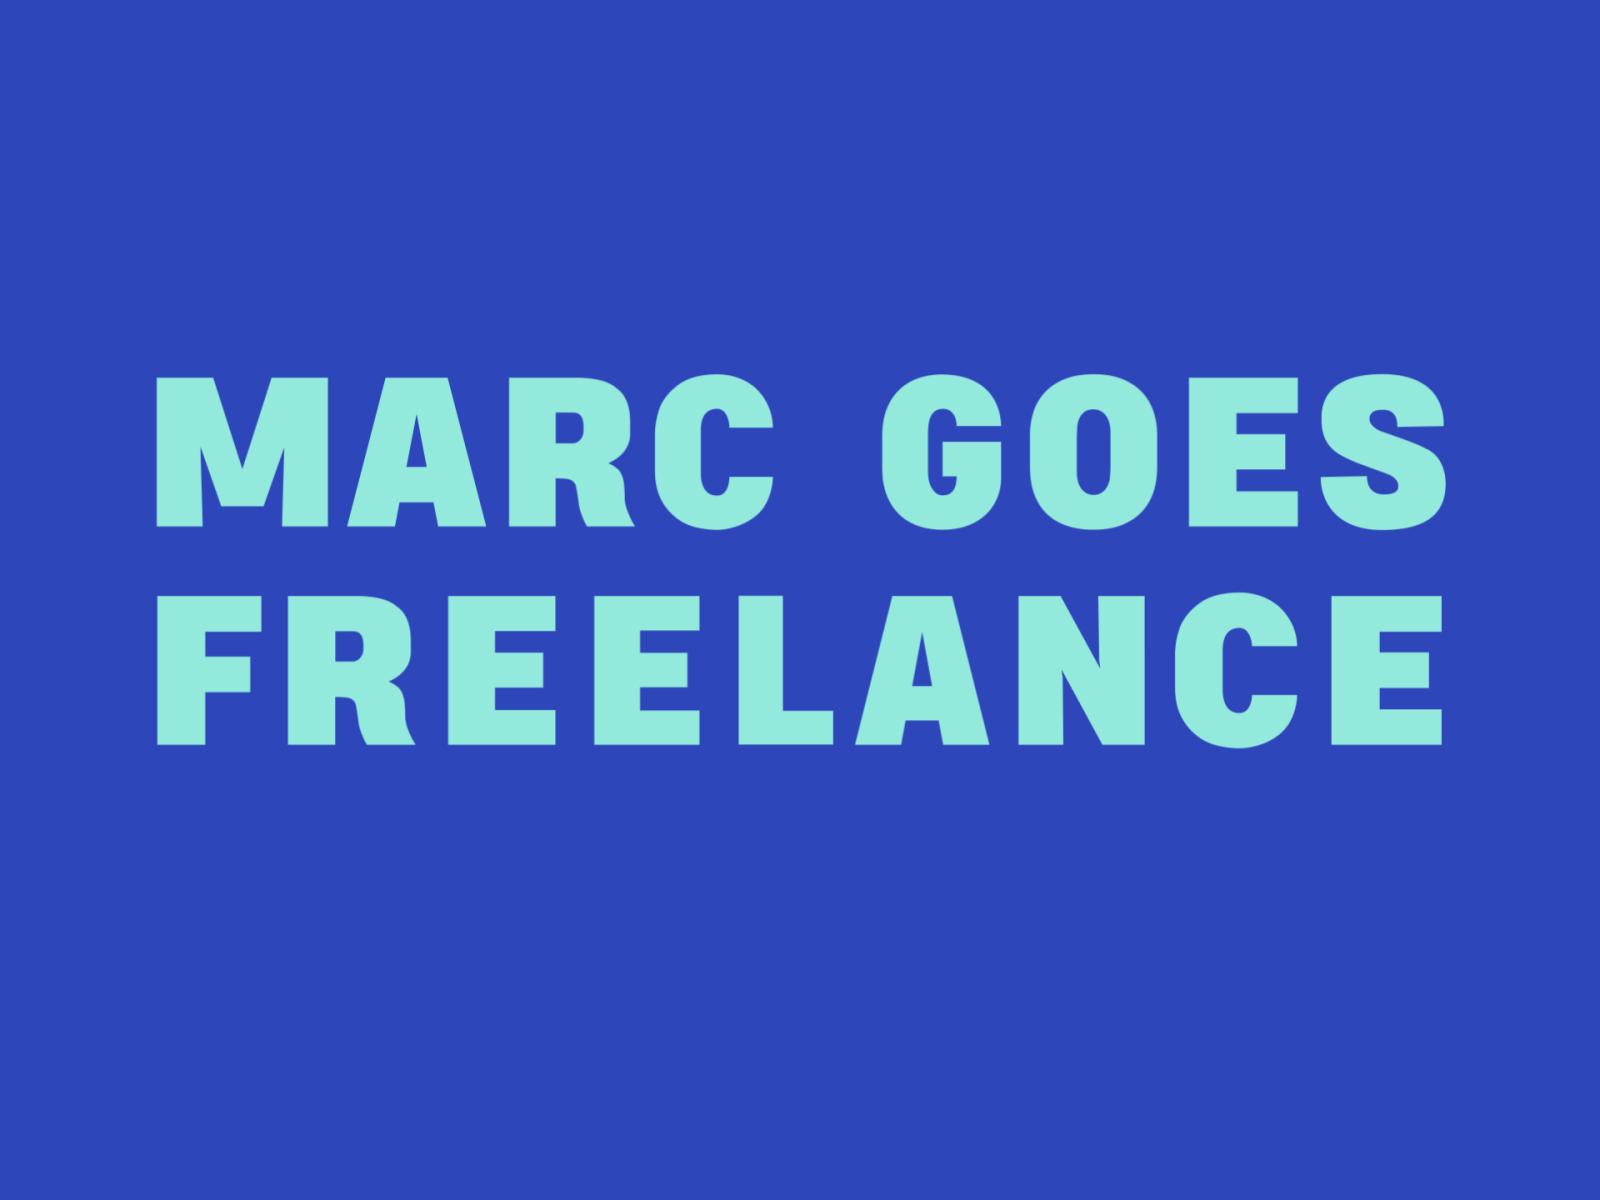 Marc goes freelance!